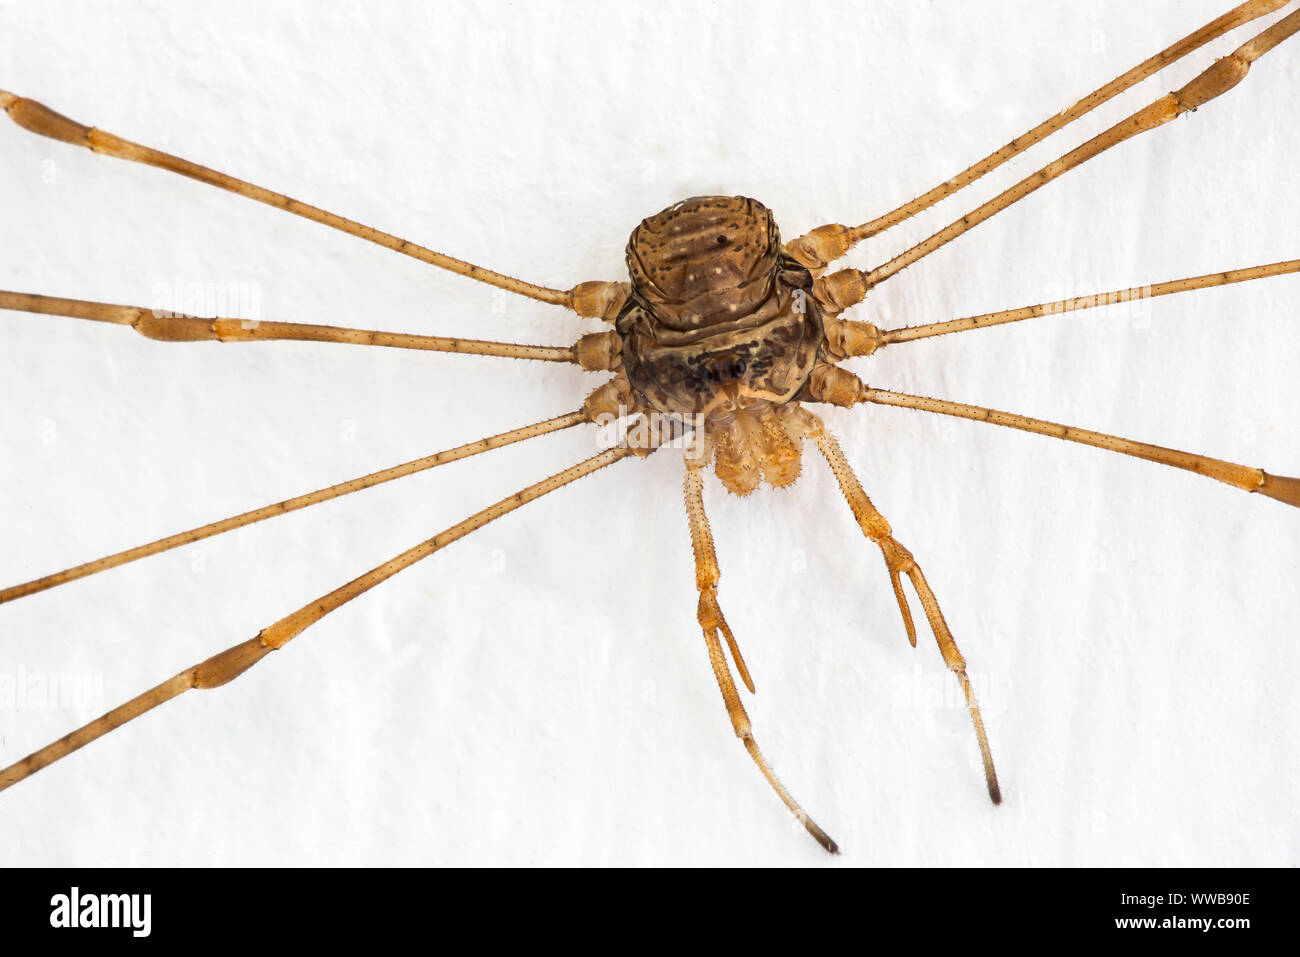 Araña Harvestman [ Dicranopalpus Ramosus ] En casa, una araña, pero no realmente una araña tiene un solo segmento de cuerpo , 2 ojos, y no de la glándula de veneno. Foto de stock